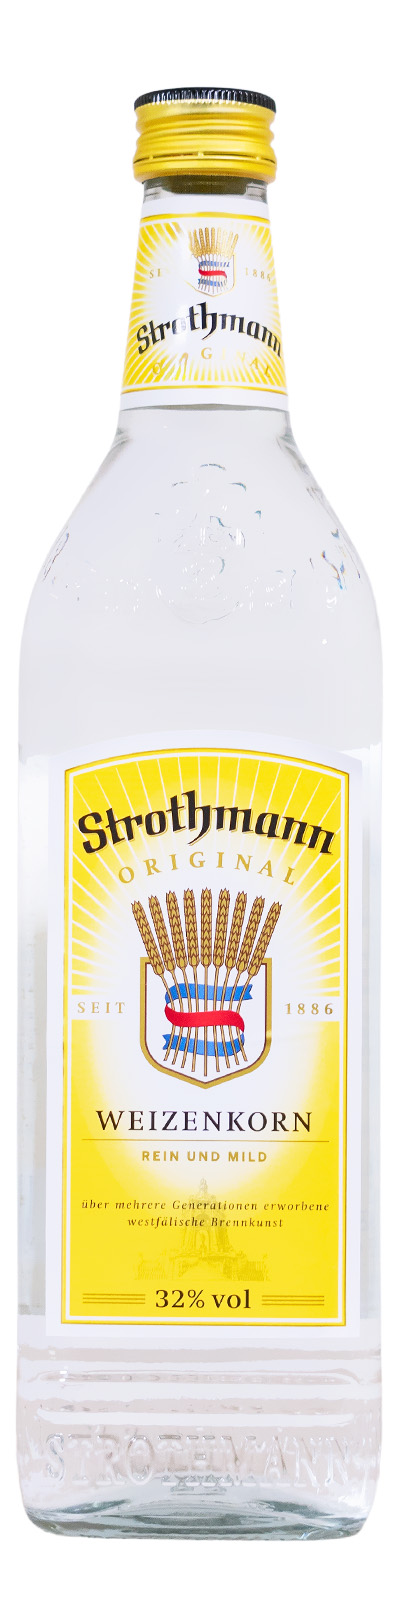 Strothmann Weizenkorn - 0,7L 32% vol